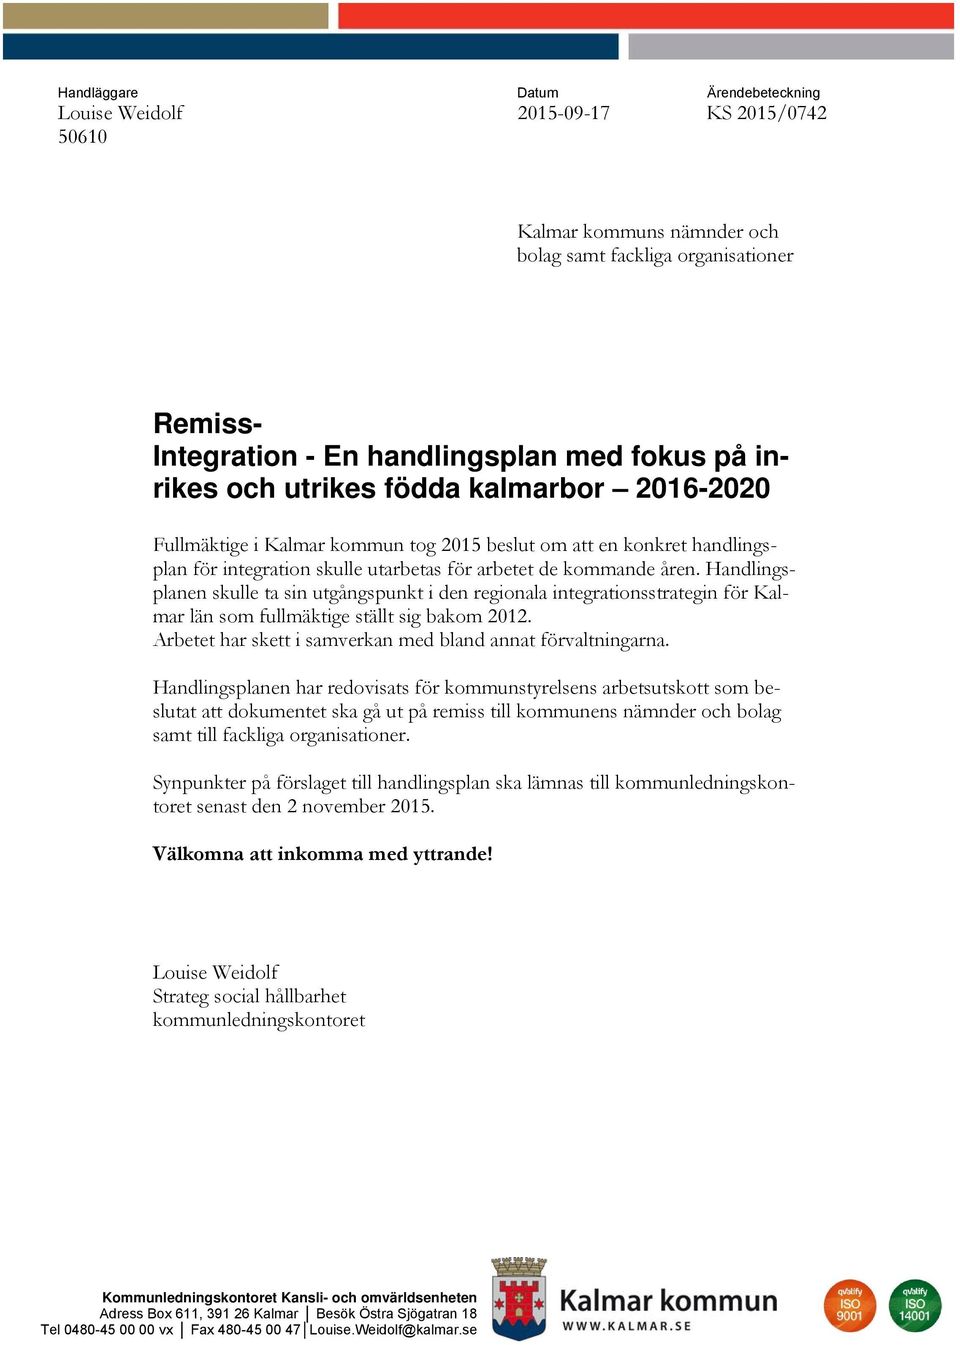 Handlingsplanen skulle ta sin utgångspunkt i den regionala integrationsstrategin för Kalmar län som fullmäktige ställt sig bakom 2012. Arbetet har skett i samverkan med bland annat förvaltningarna.